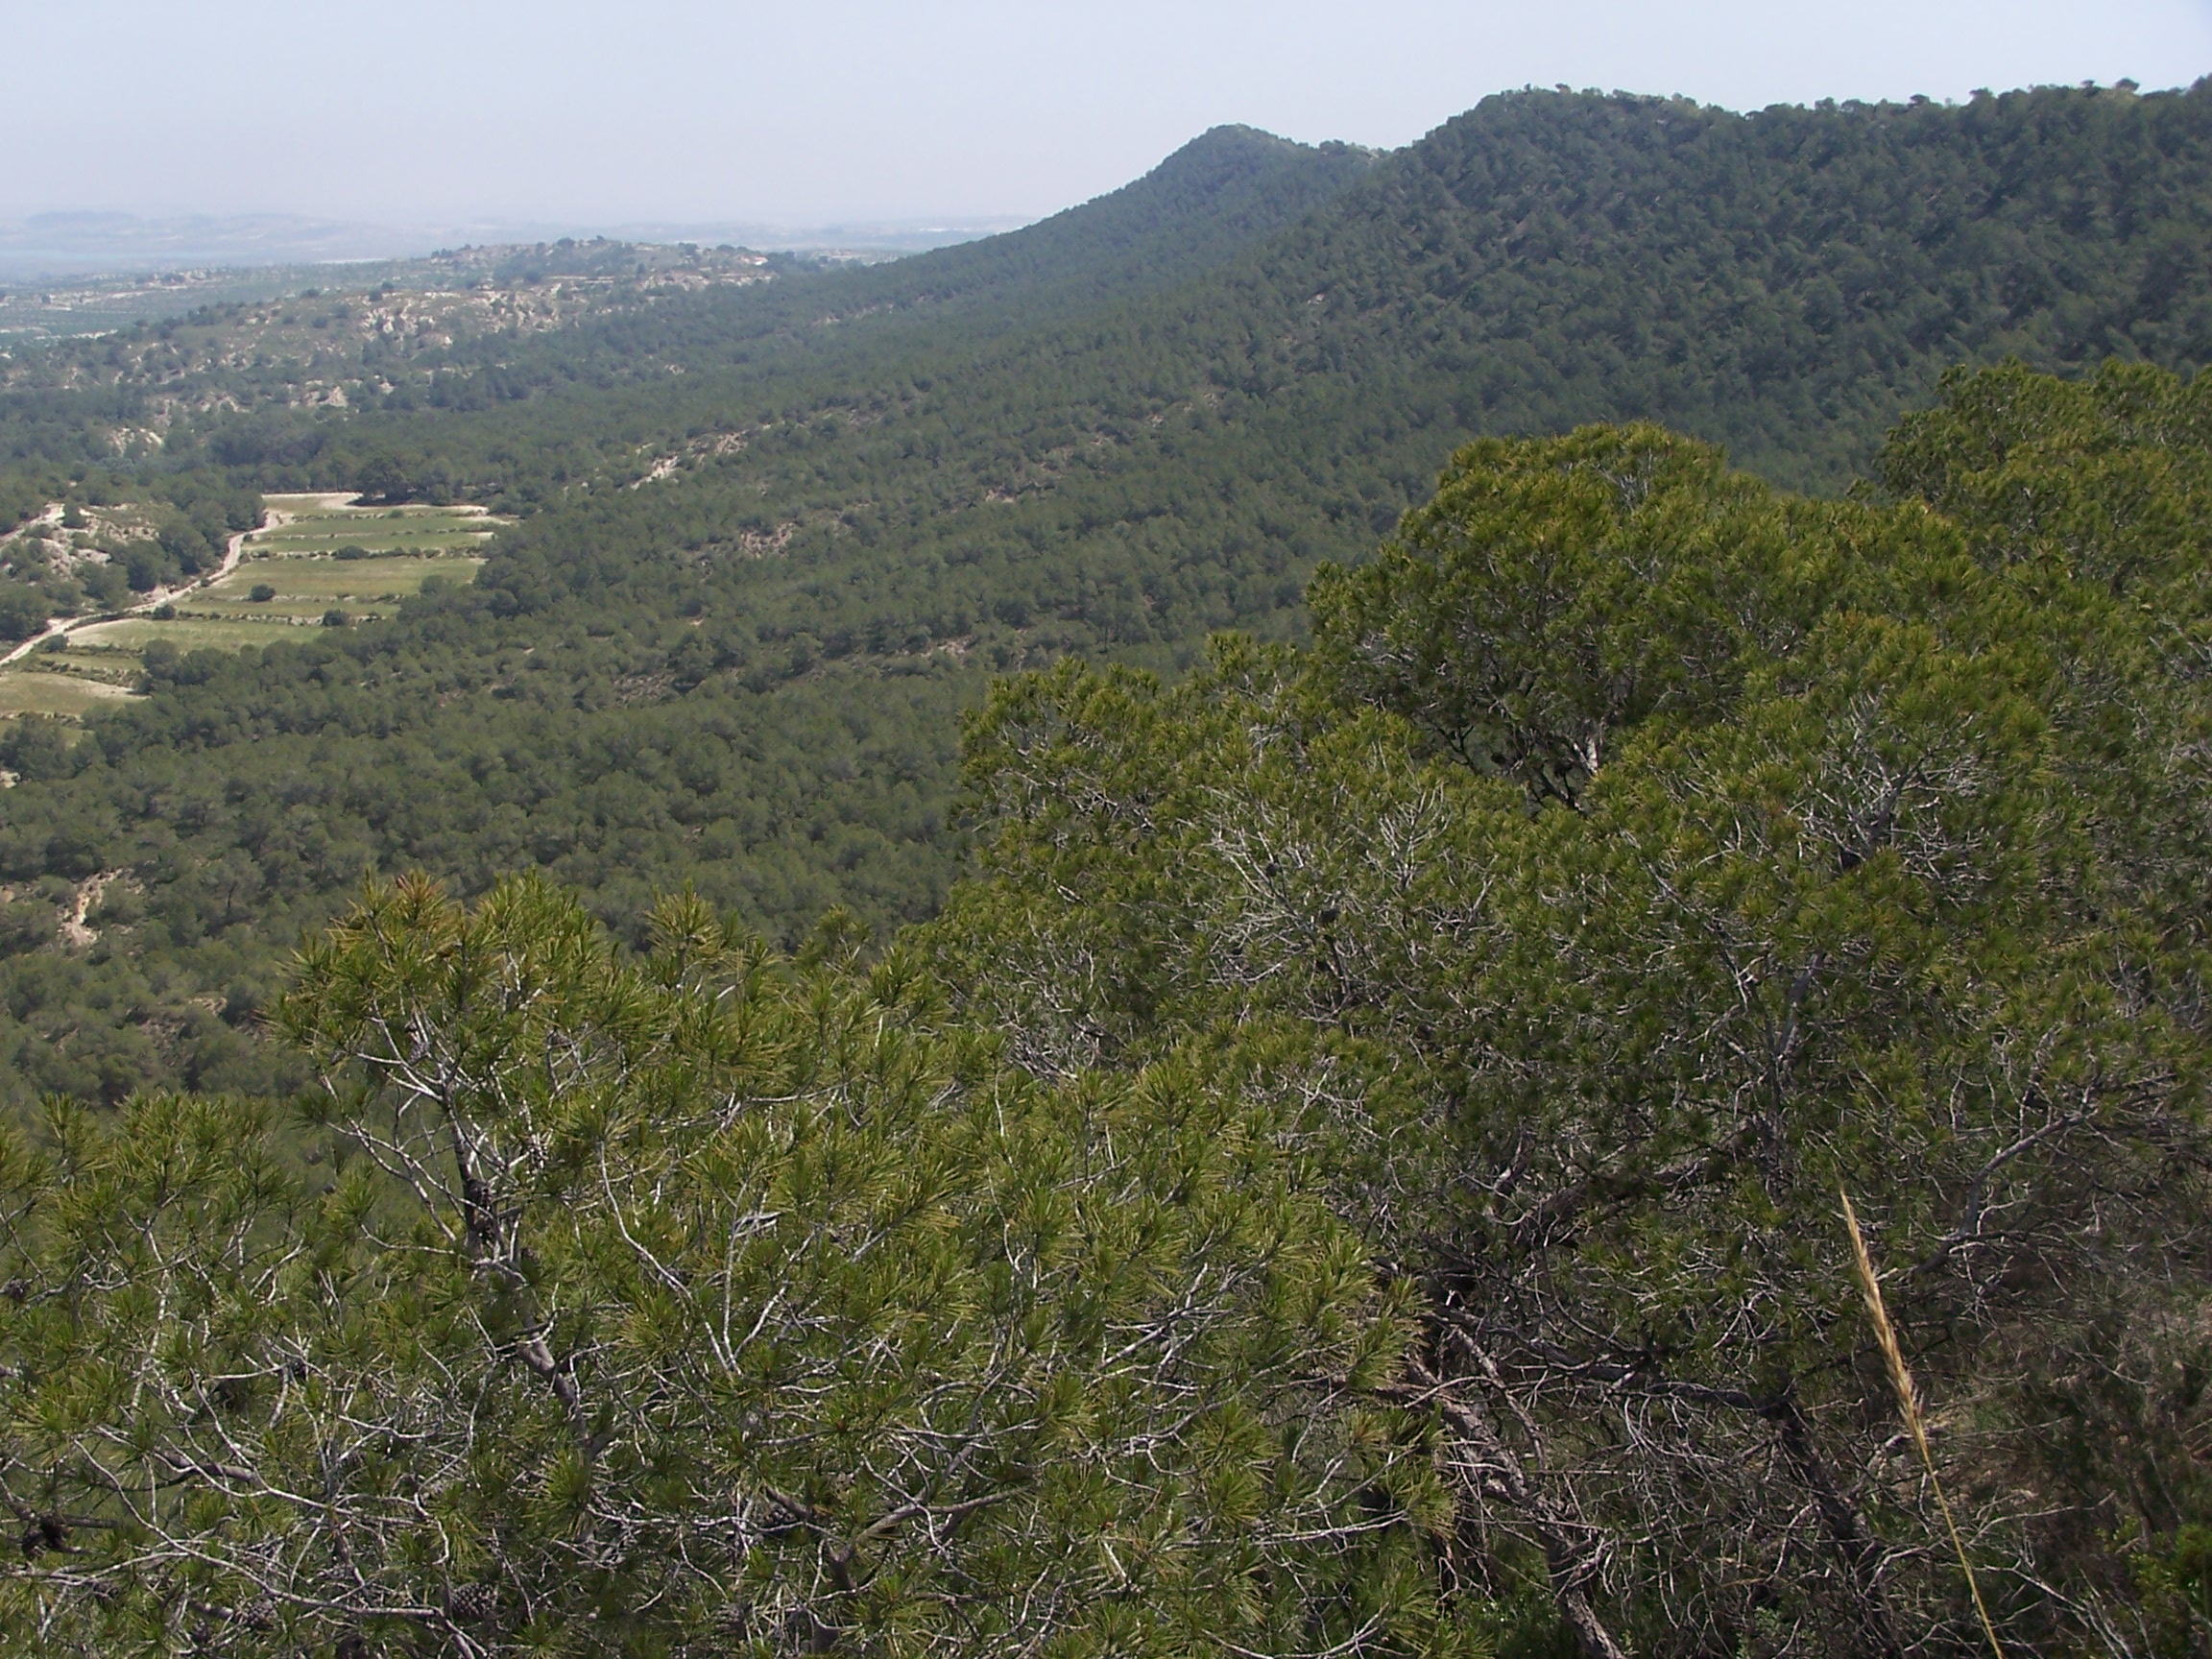 Paratge Natural Sierra Escalona. San Miguel de Salinas